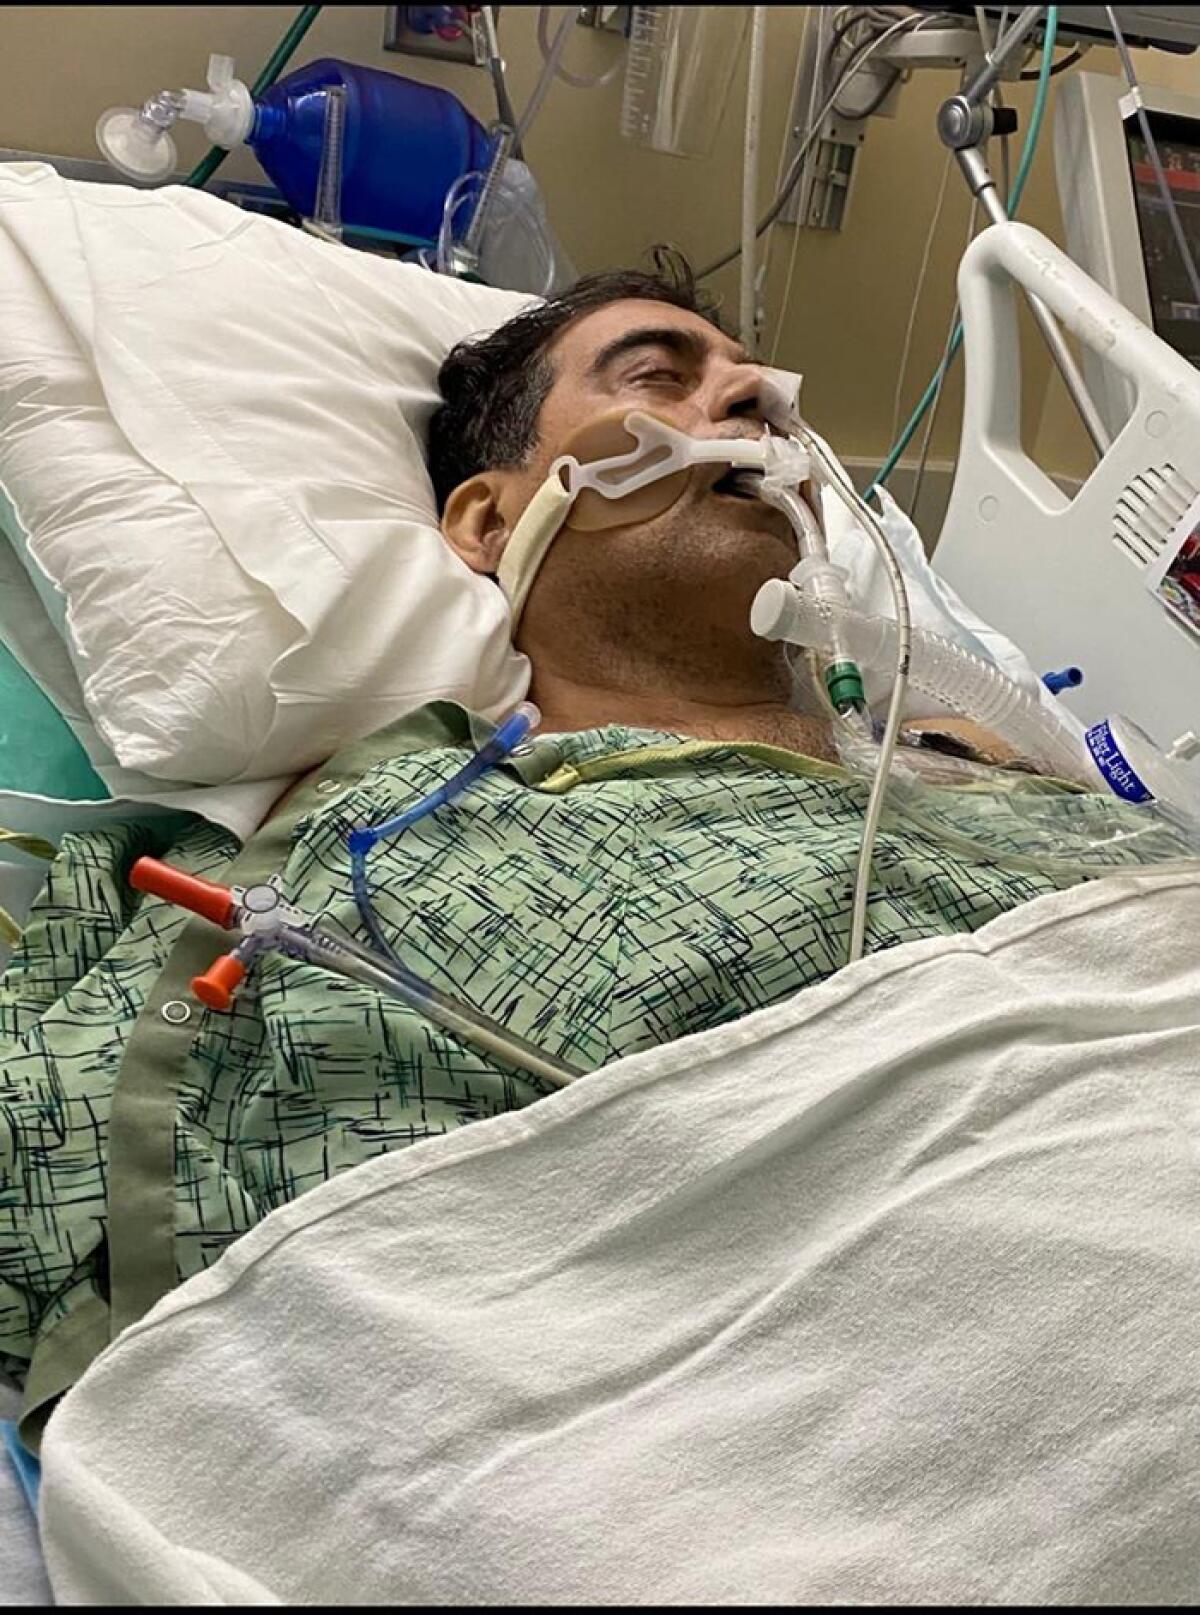 Moreno pasó casi cinco meses en el hospital con ambos pulmones dañados por COVID-19. Lo intubaron y le pusieron un respirador, una máquina que respiraba por él. Foto cortesía de Moreno